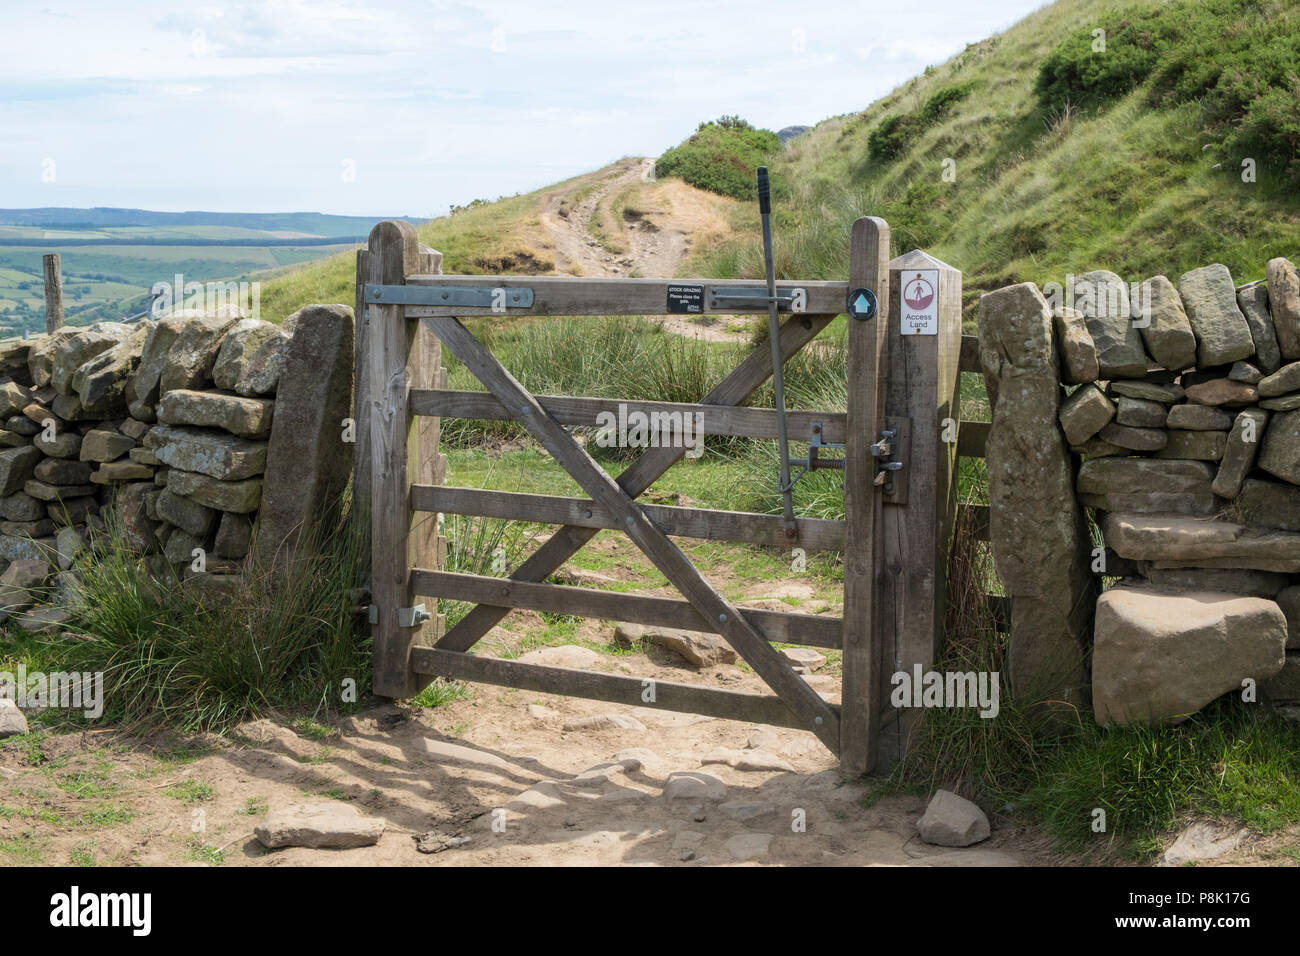 Holz- Fünf bar Gate in einer Trockenmauer in der Landschaft mit ein Zeichen, das die Grenze des Zugangs Land Land zu eröffnen, Derbyshire, England, Großbritannien Stockfoto